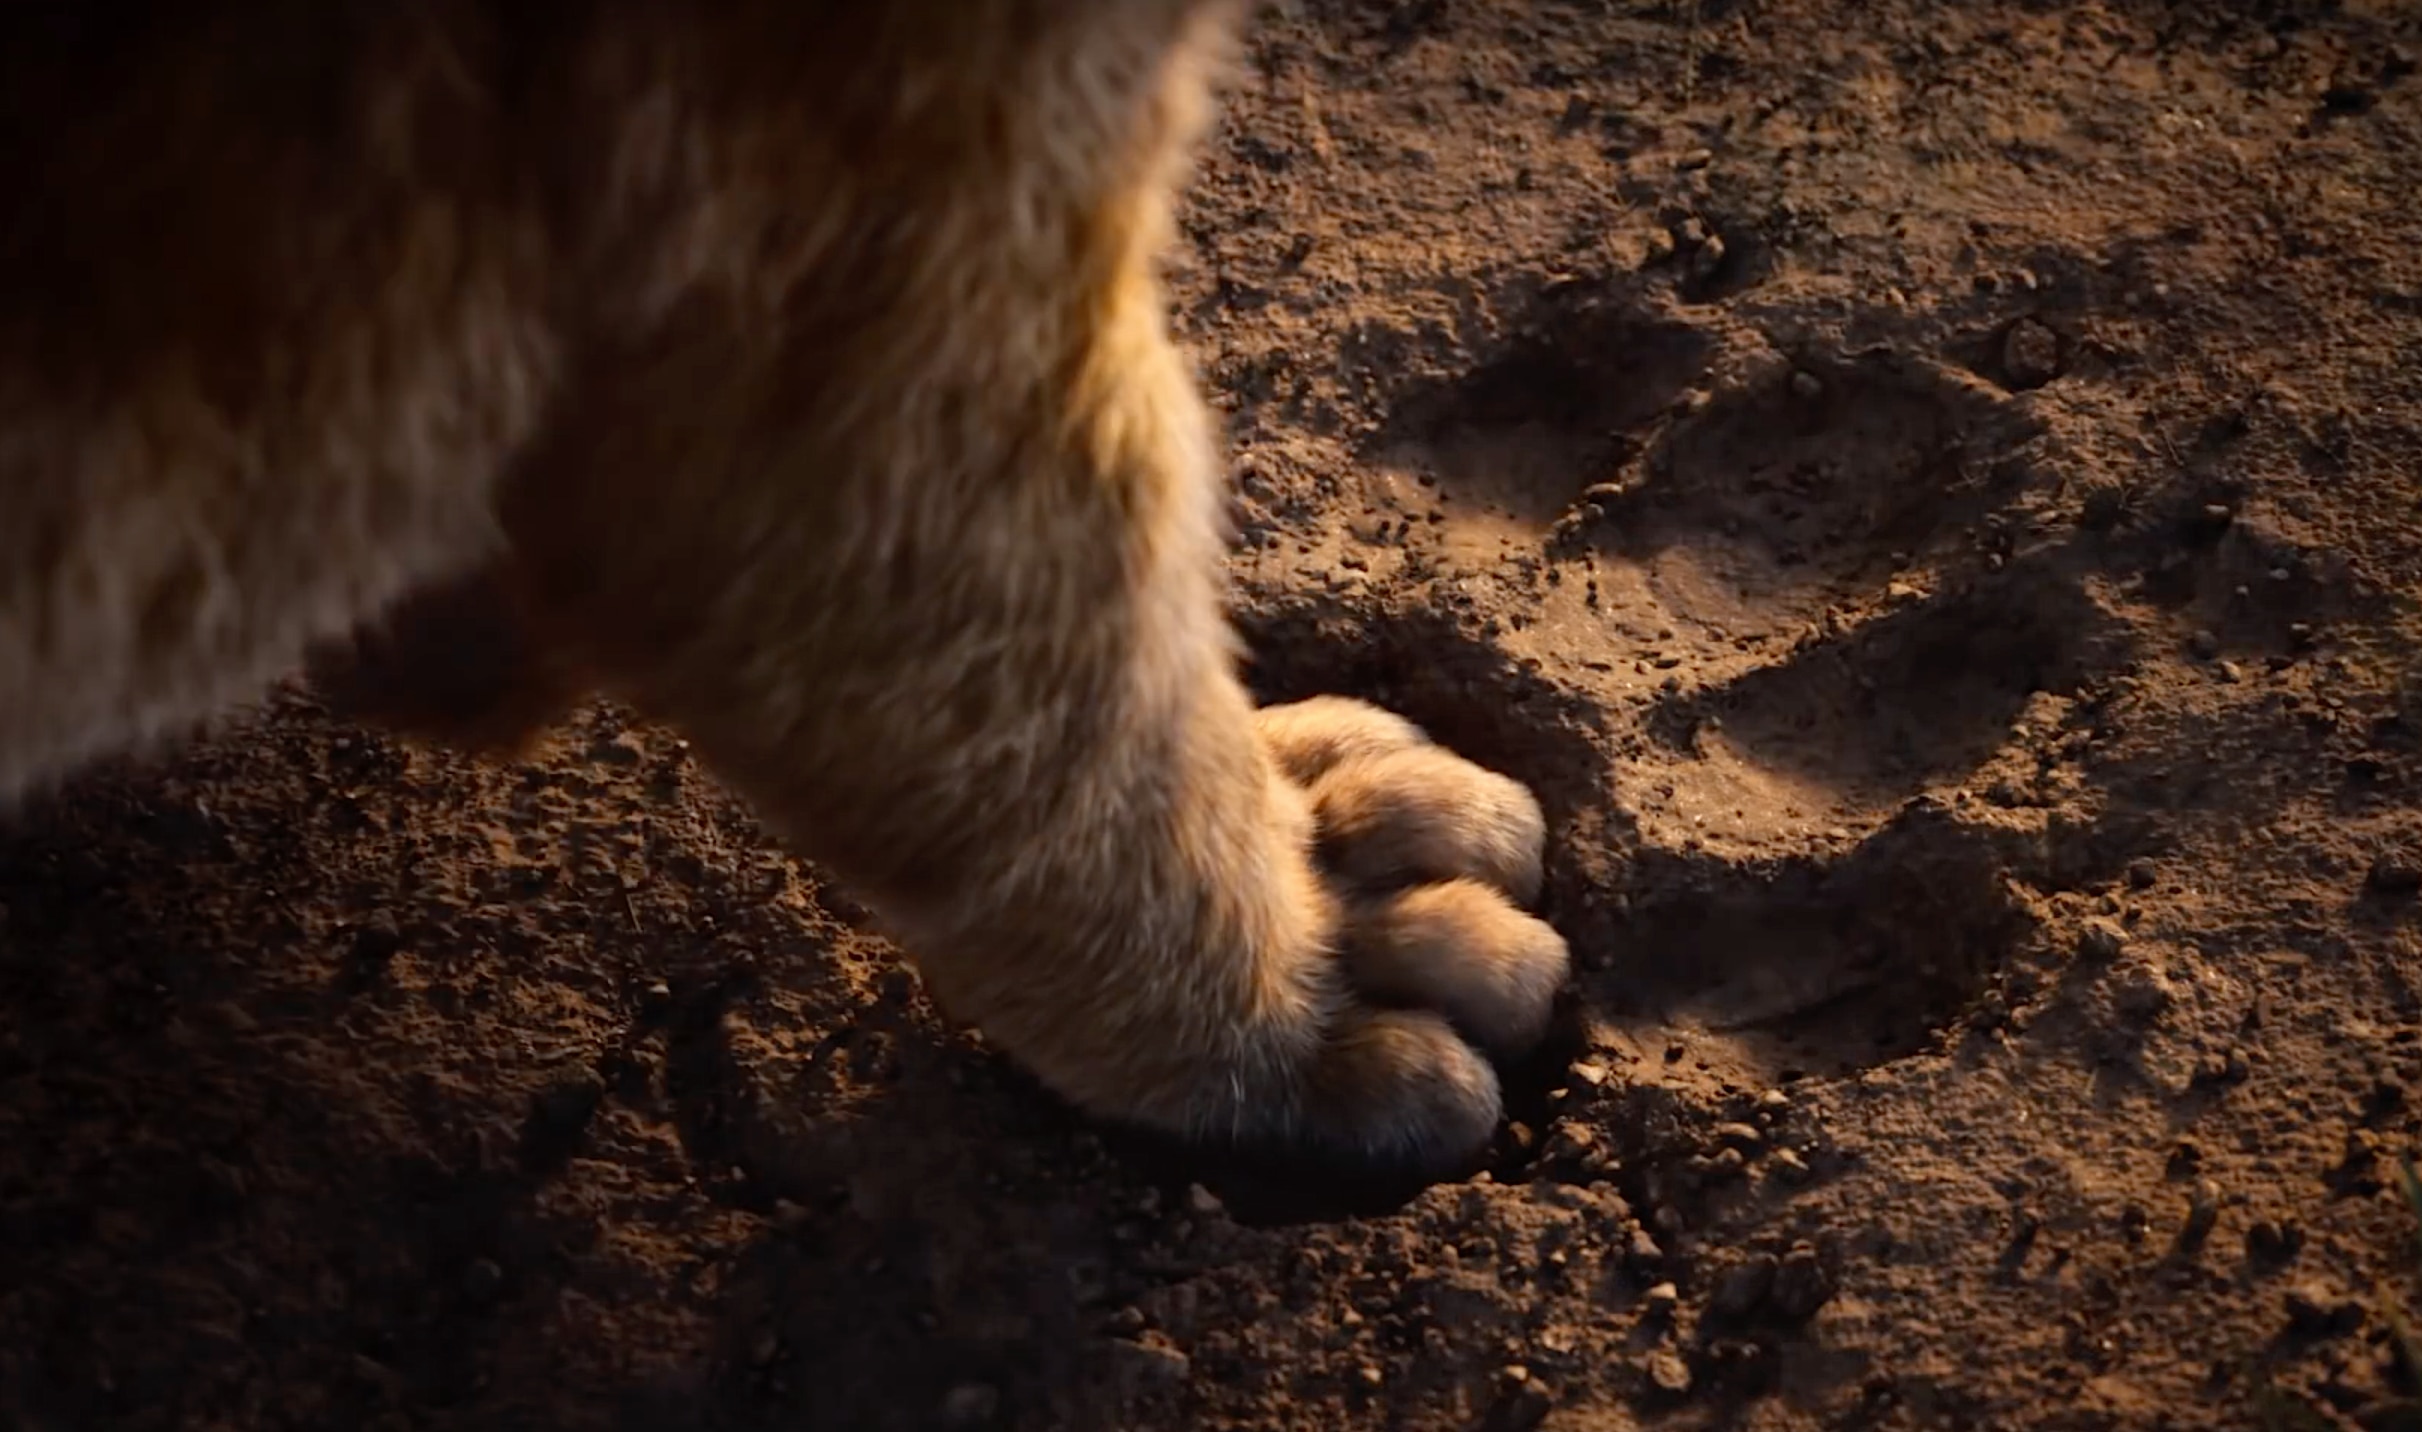 The Lion King remake Simba Paw via Disney YouTube 2019